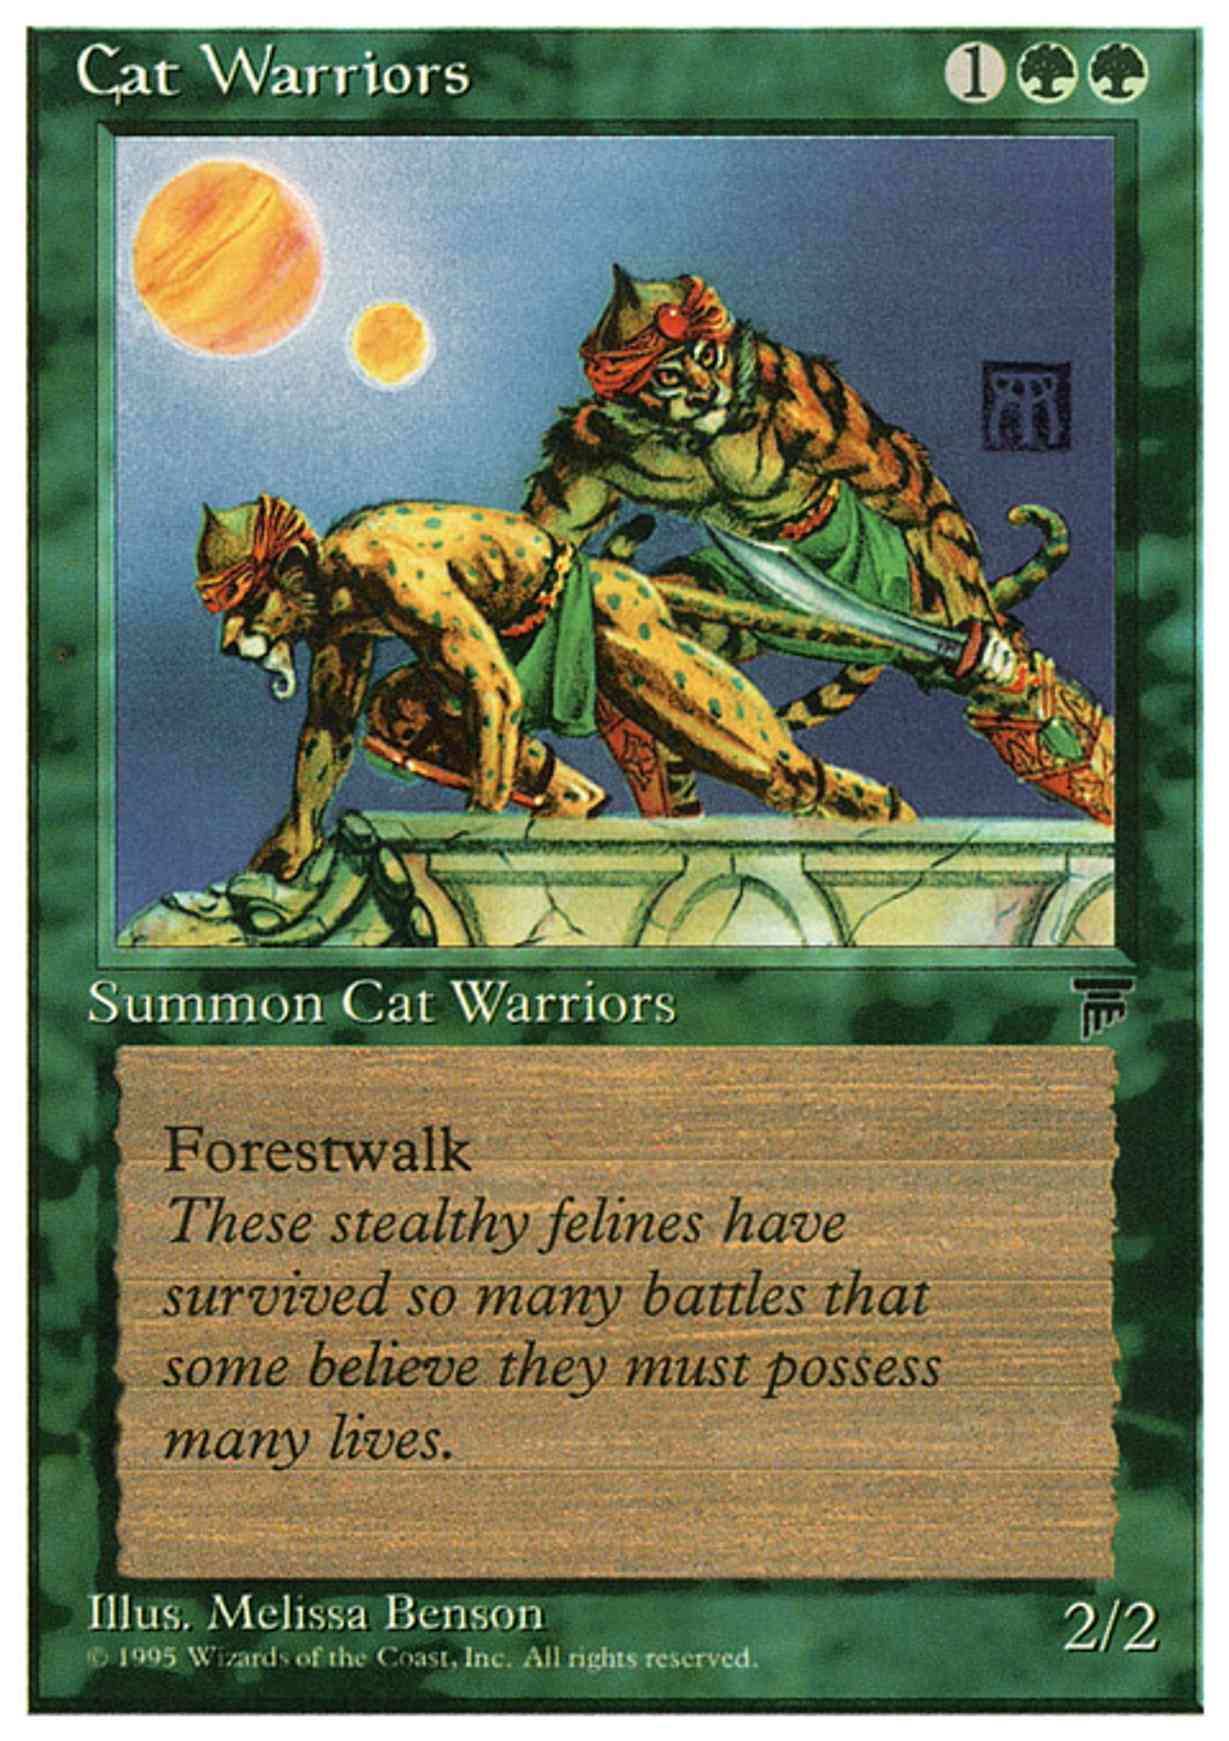 Cat Warriors magic card front